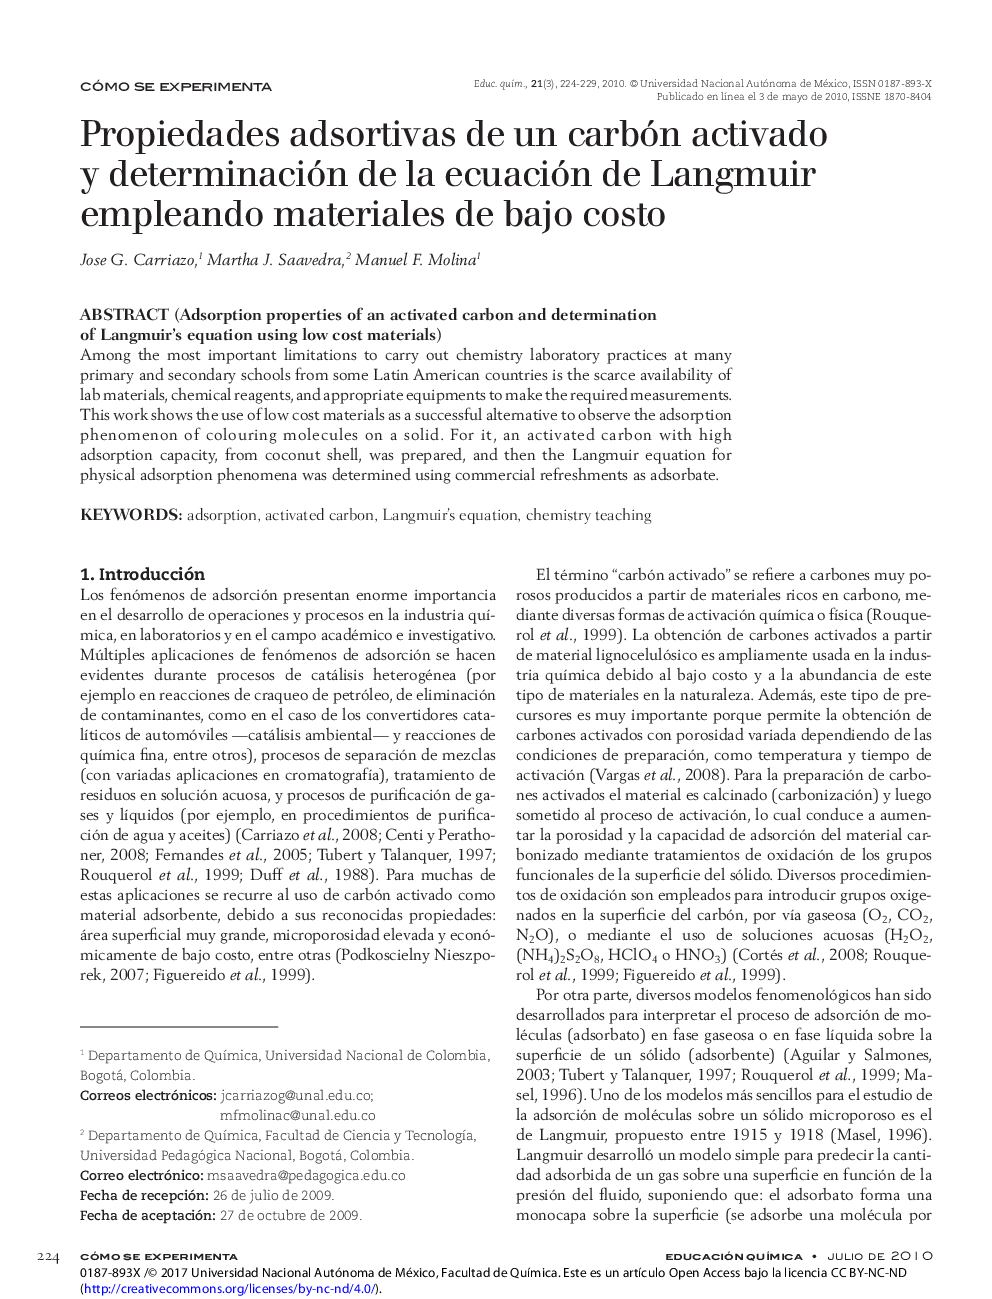 Propiedades adsortivas de un carbón activado y determinación de la ecuación de Langmuir empleando materiales de bajo costo